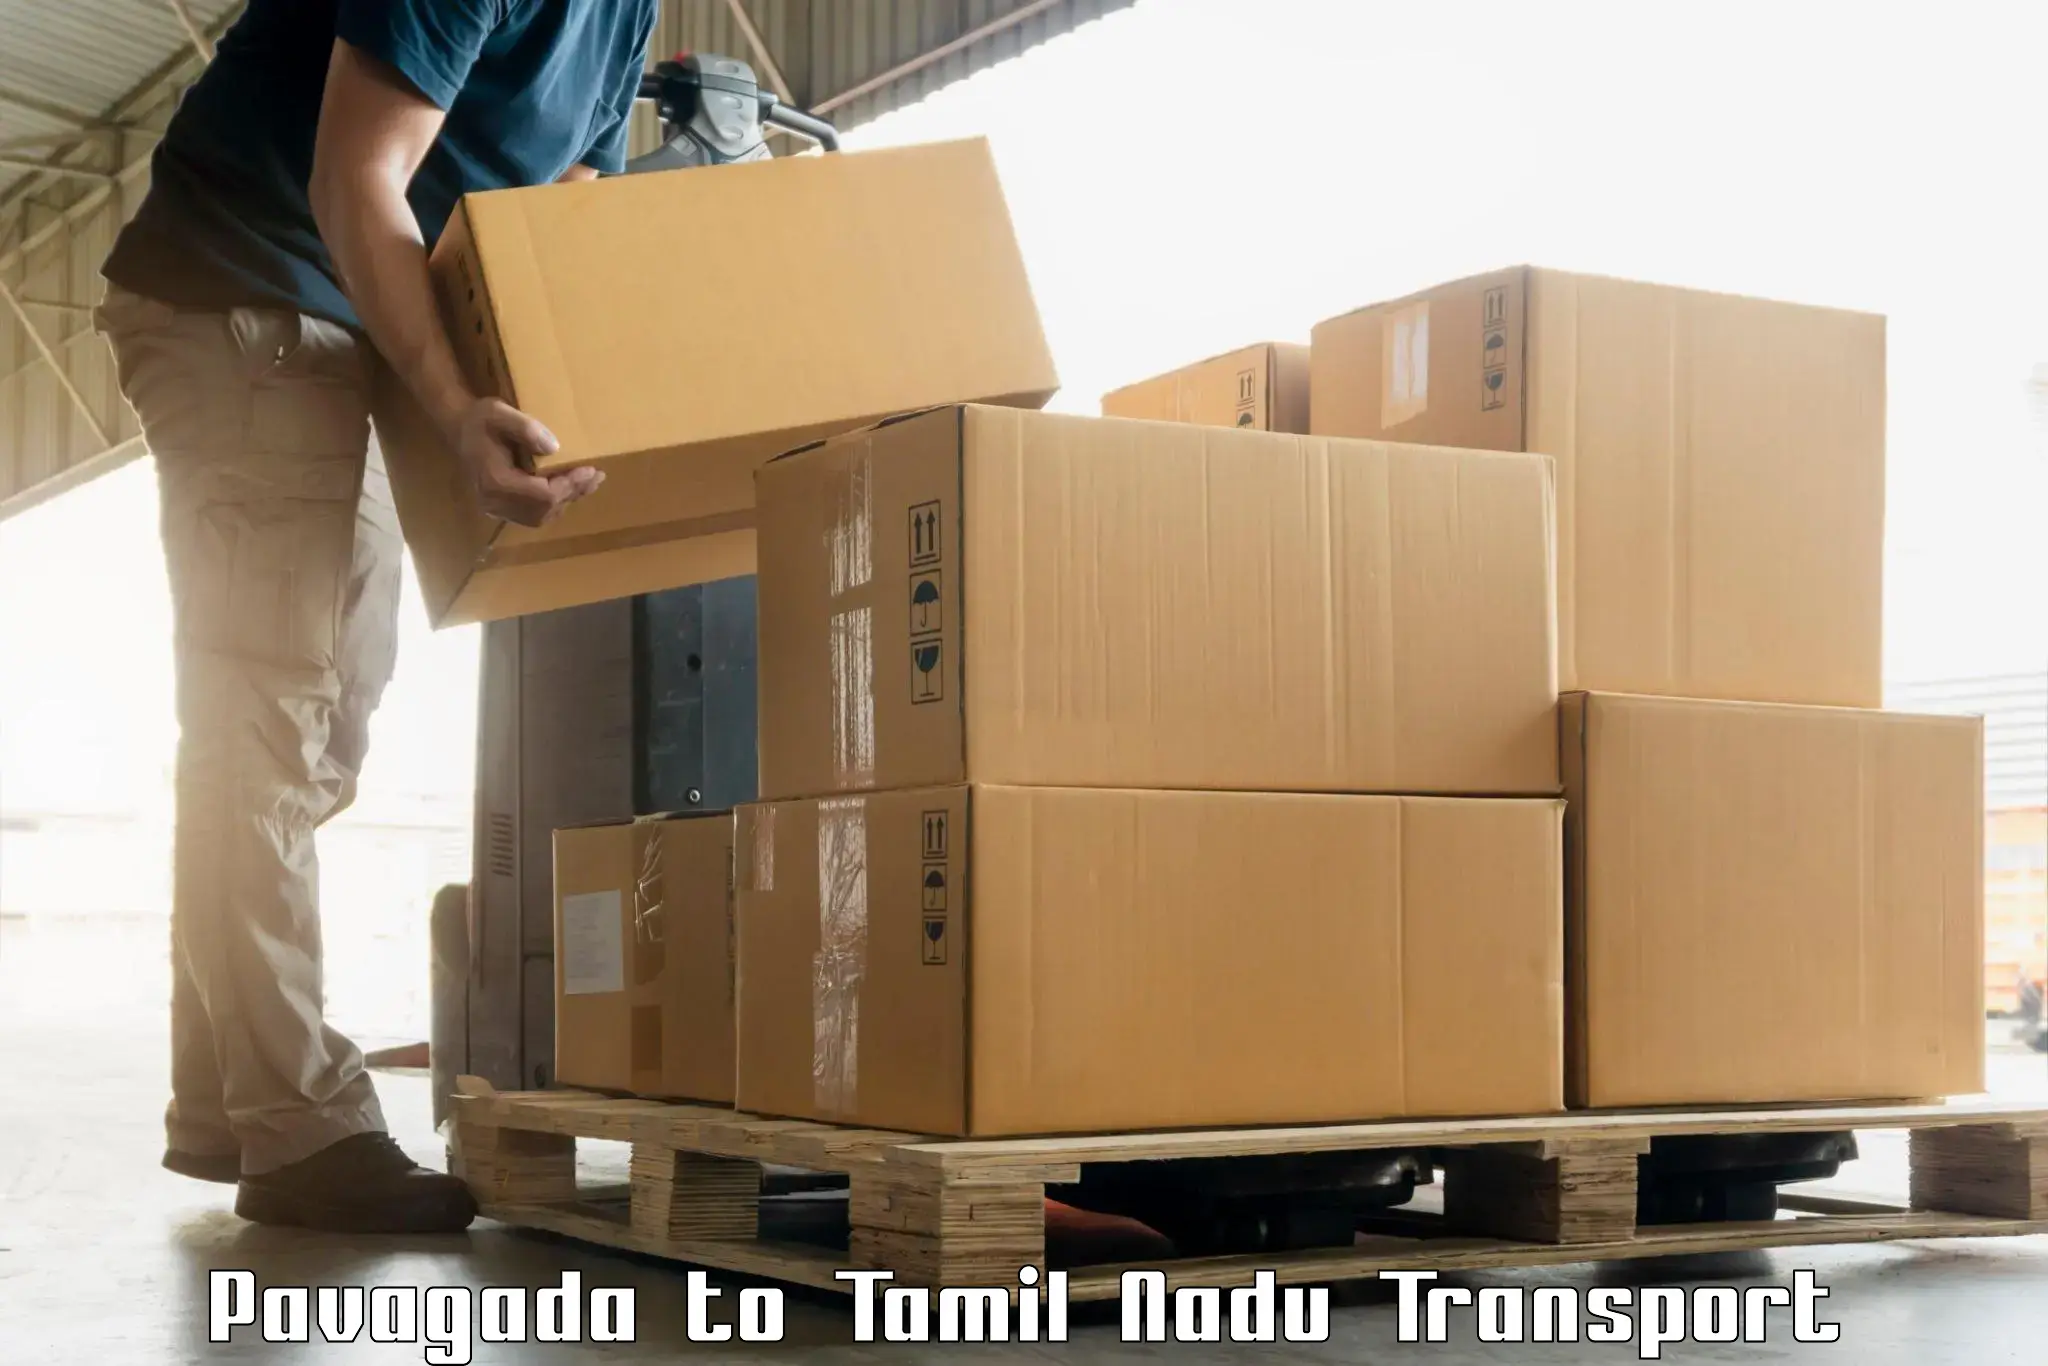 India truck logistics services Pavagada to Vellore